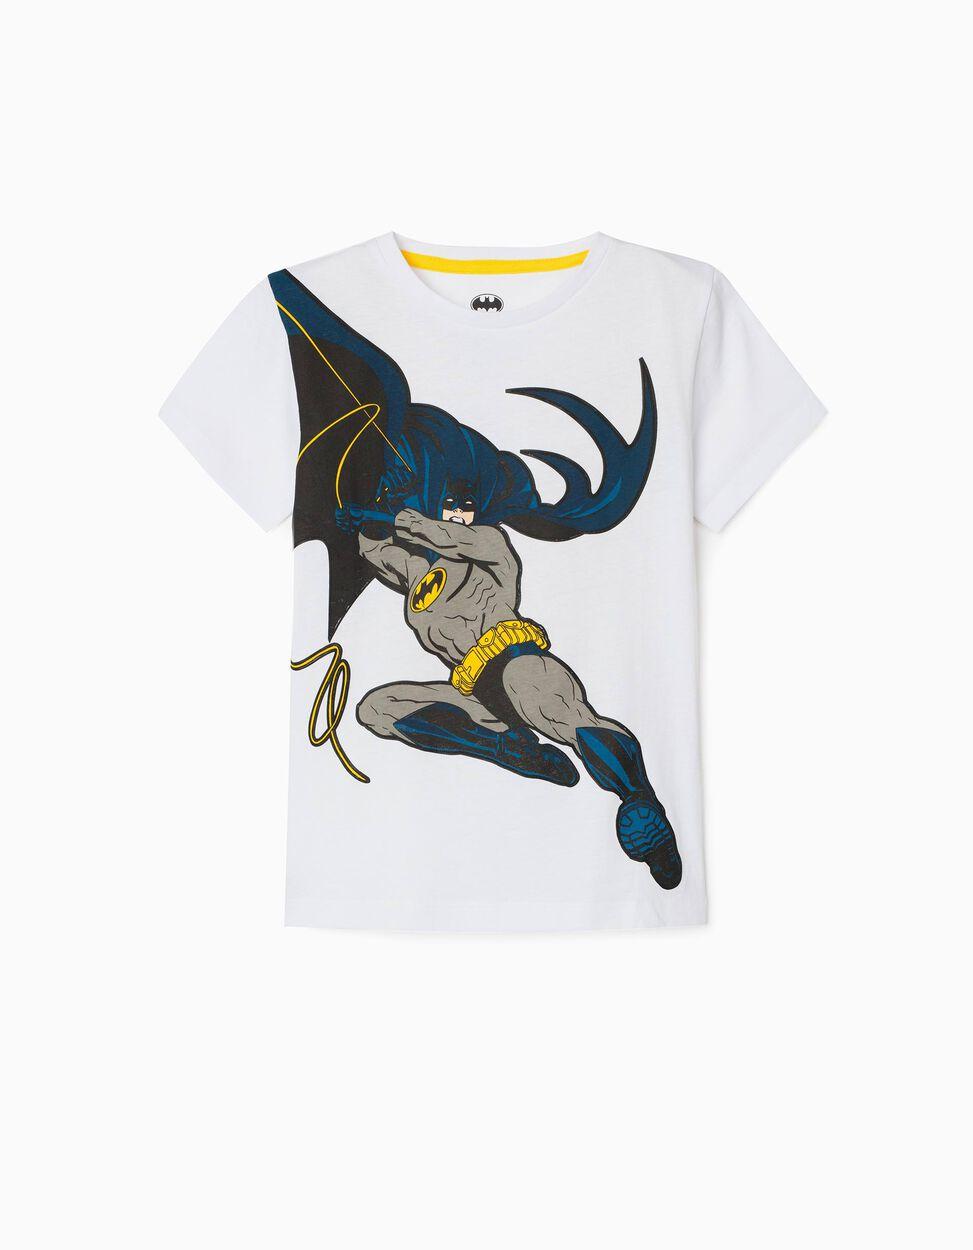 Camiseta Batman 31040795002